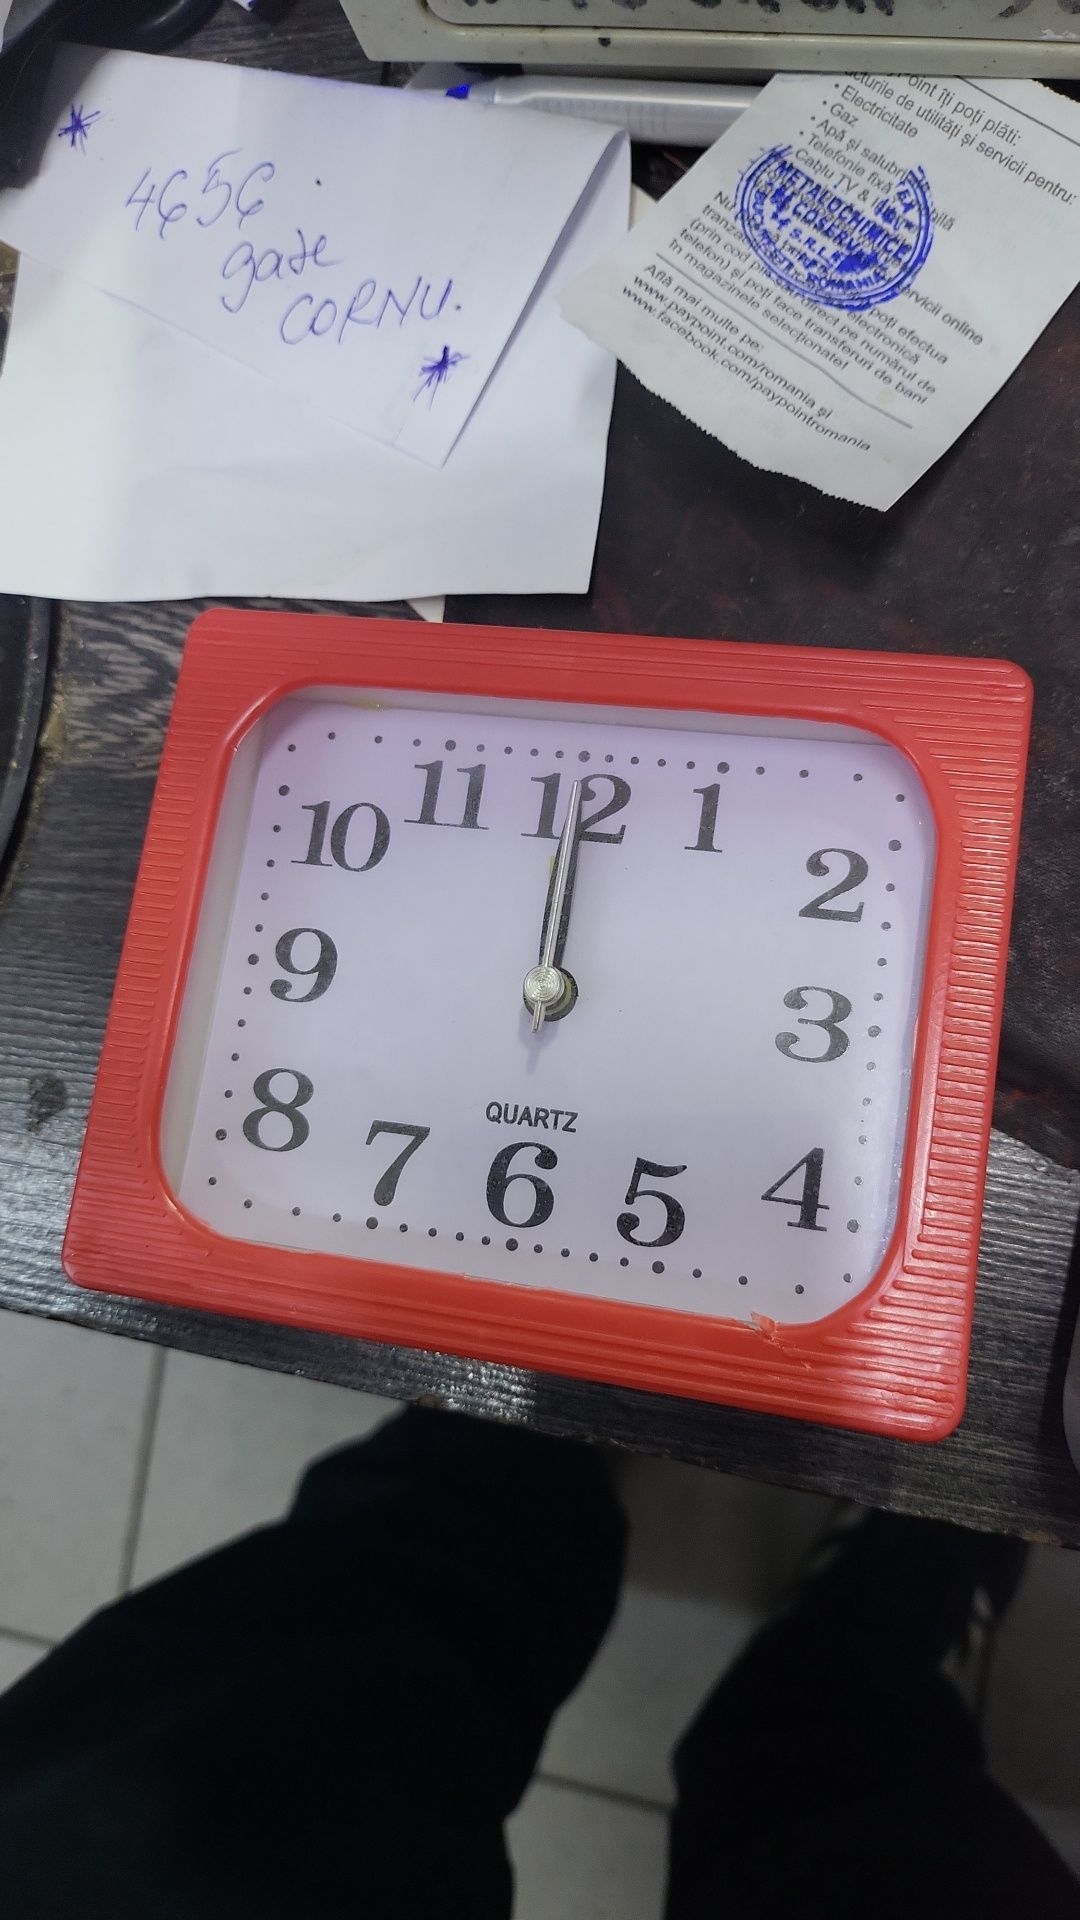 Ceasuri masa cu alarma programabila diverse modele 12 lei bucata, t